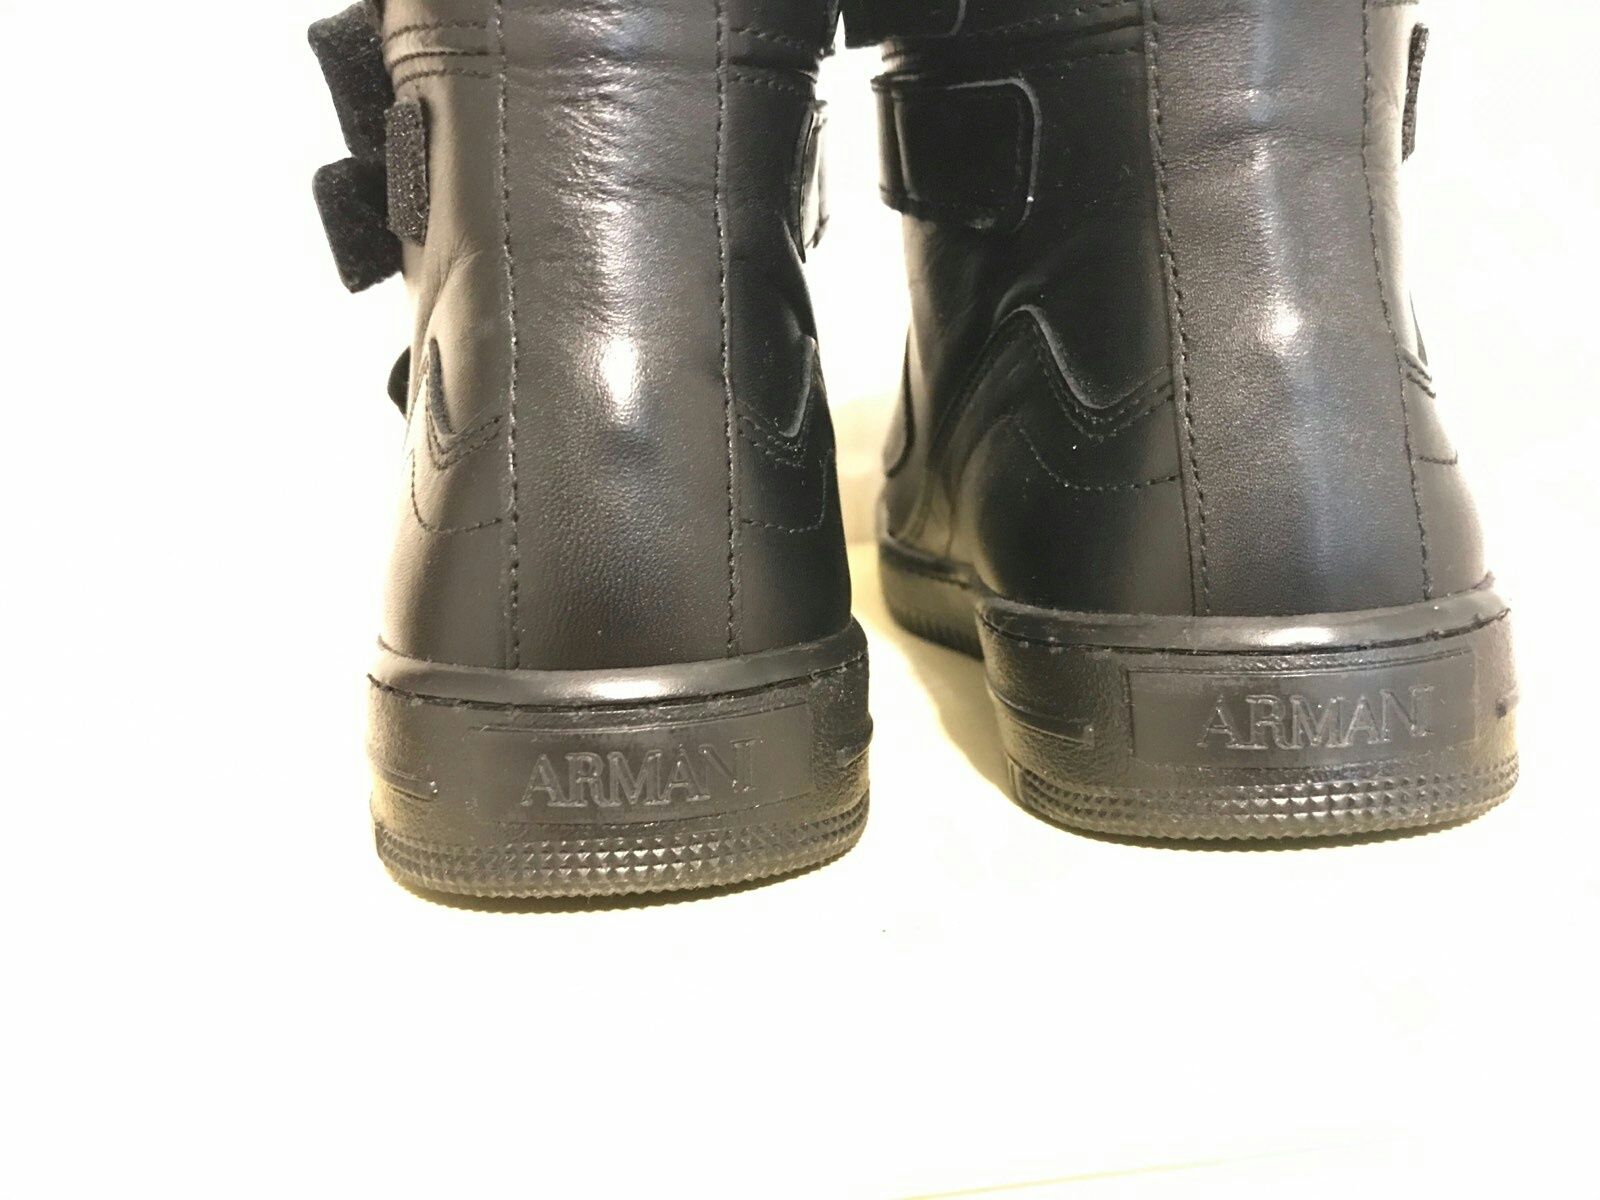 Armani Junior - Оригинал- новые зимние мужские подростковые ботинки